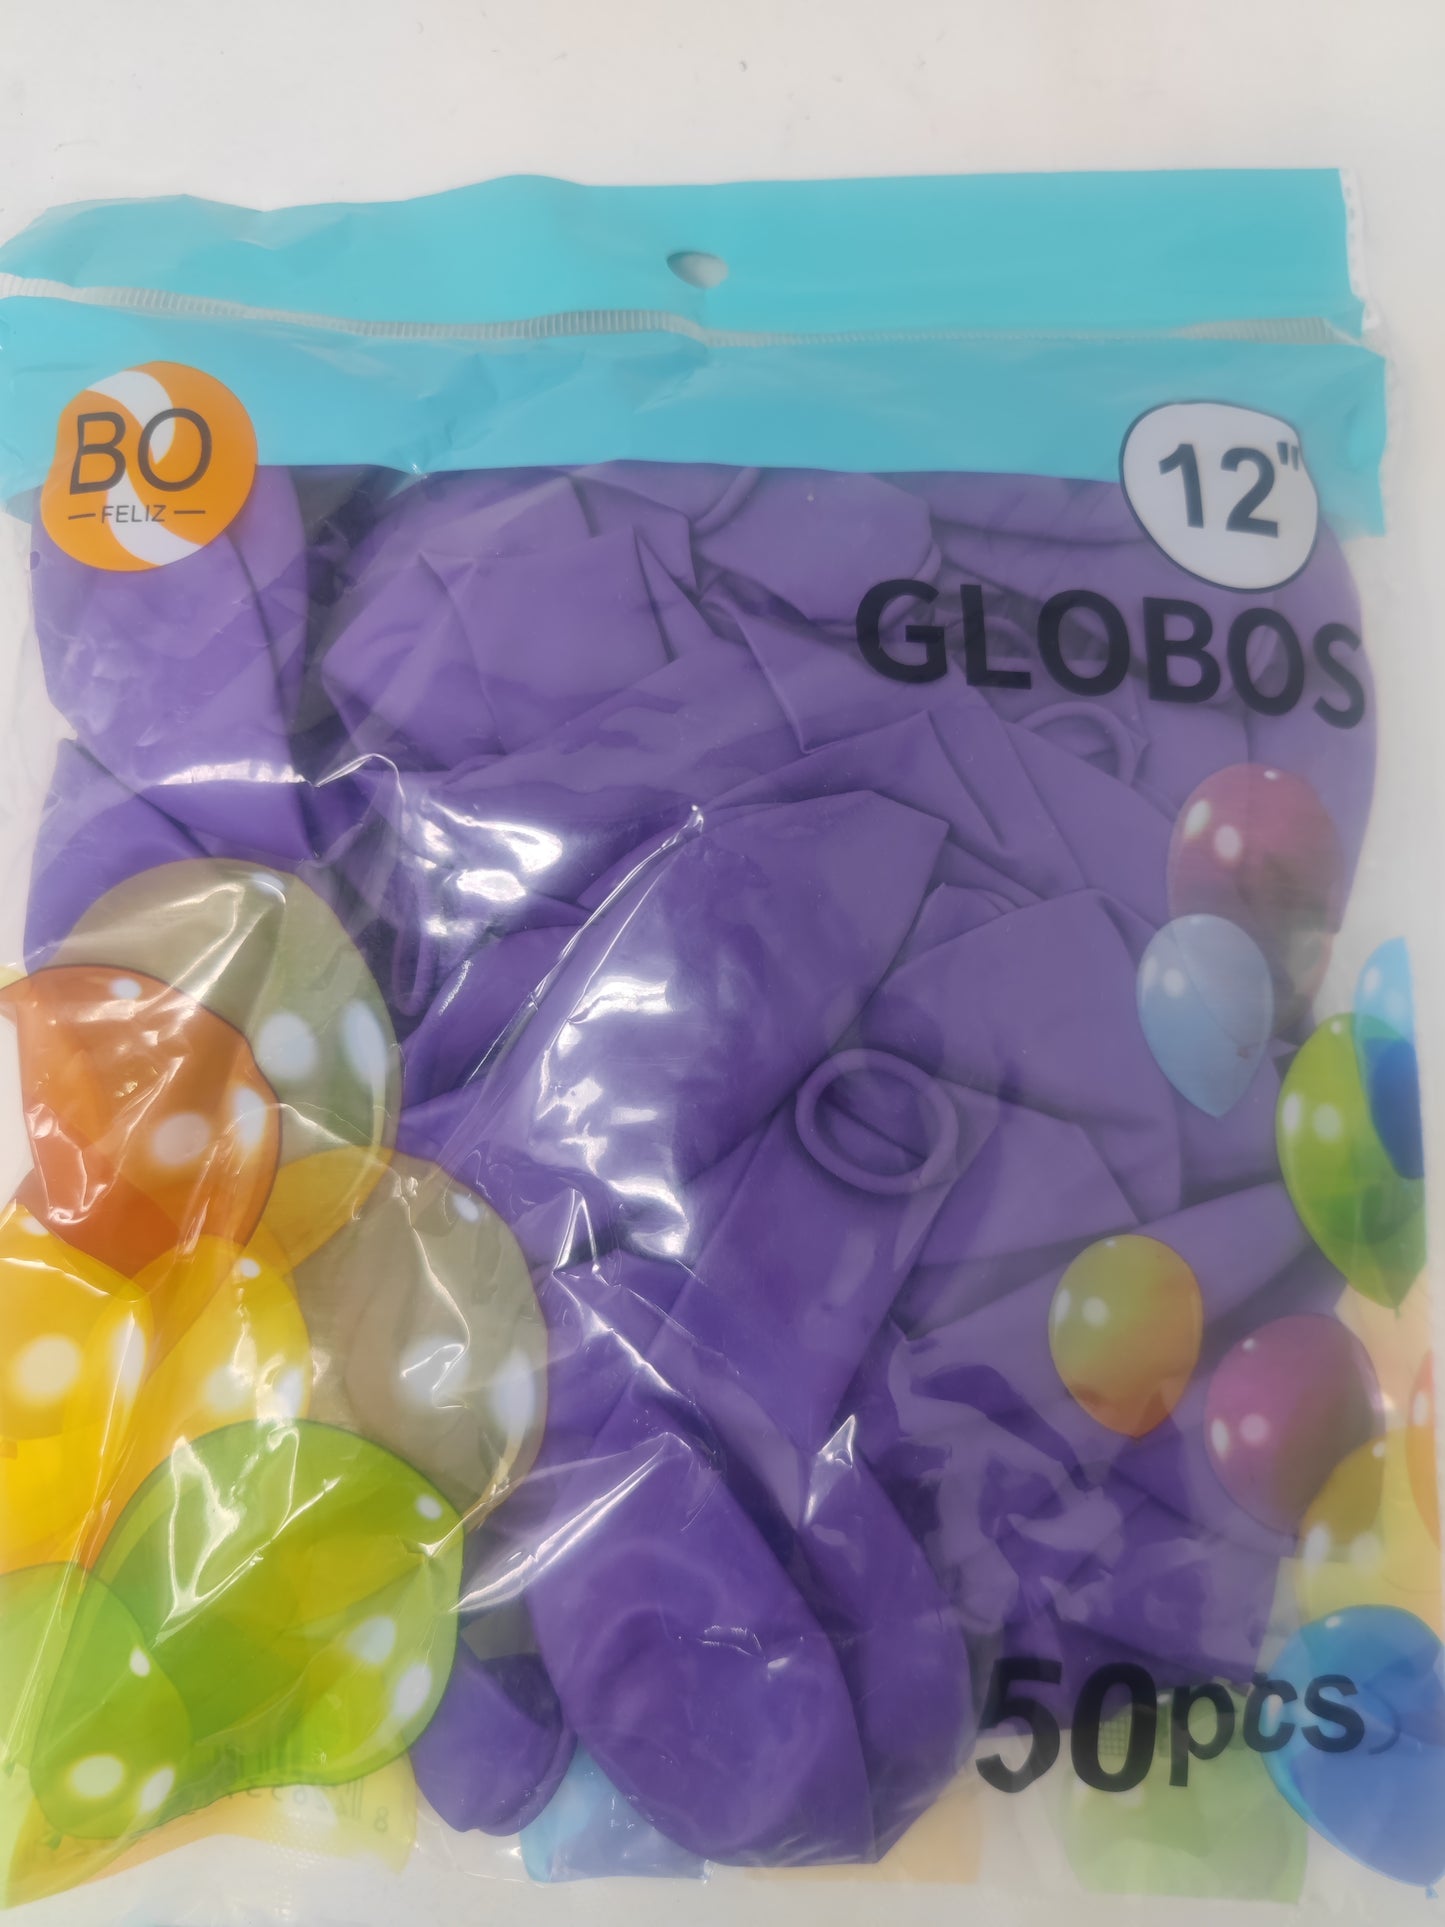 Globo BO 12” 50pz